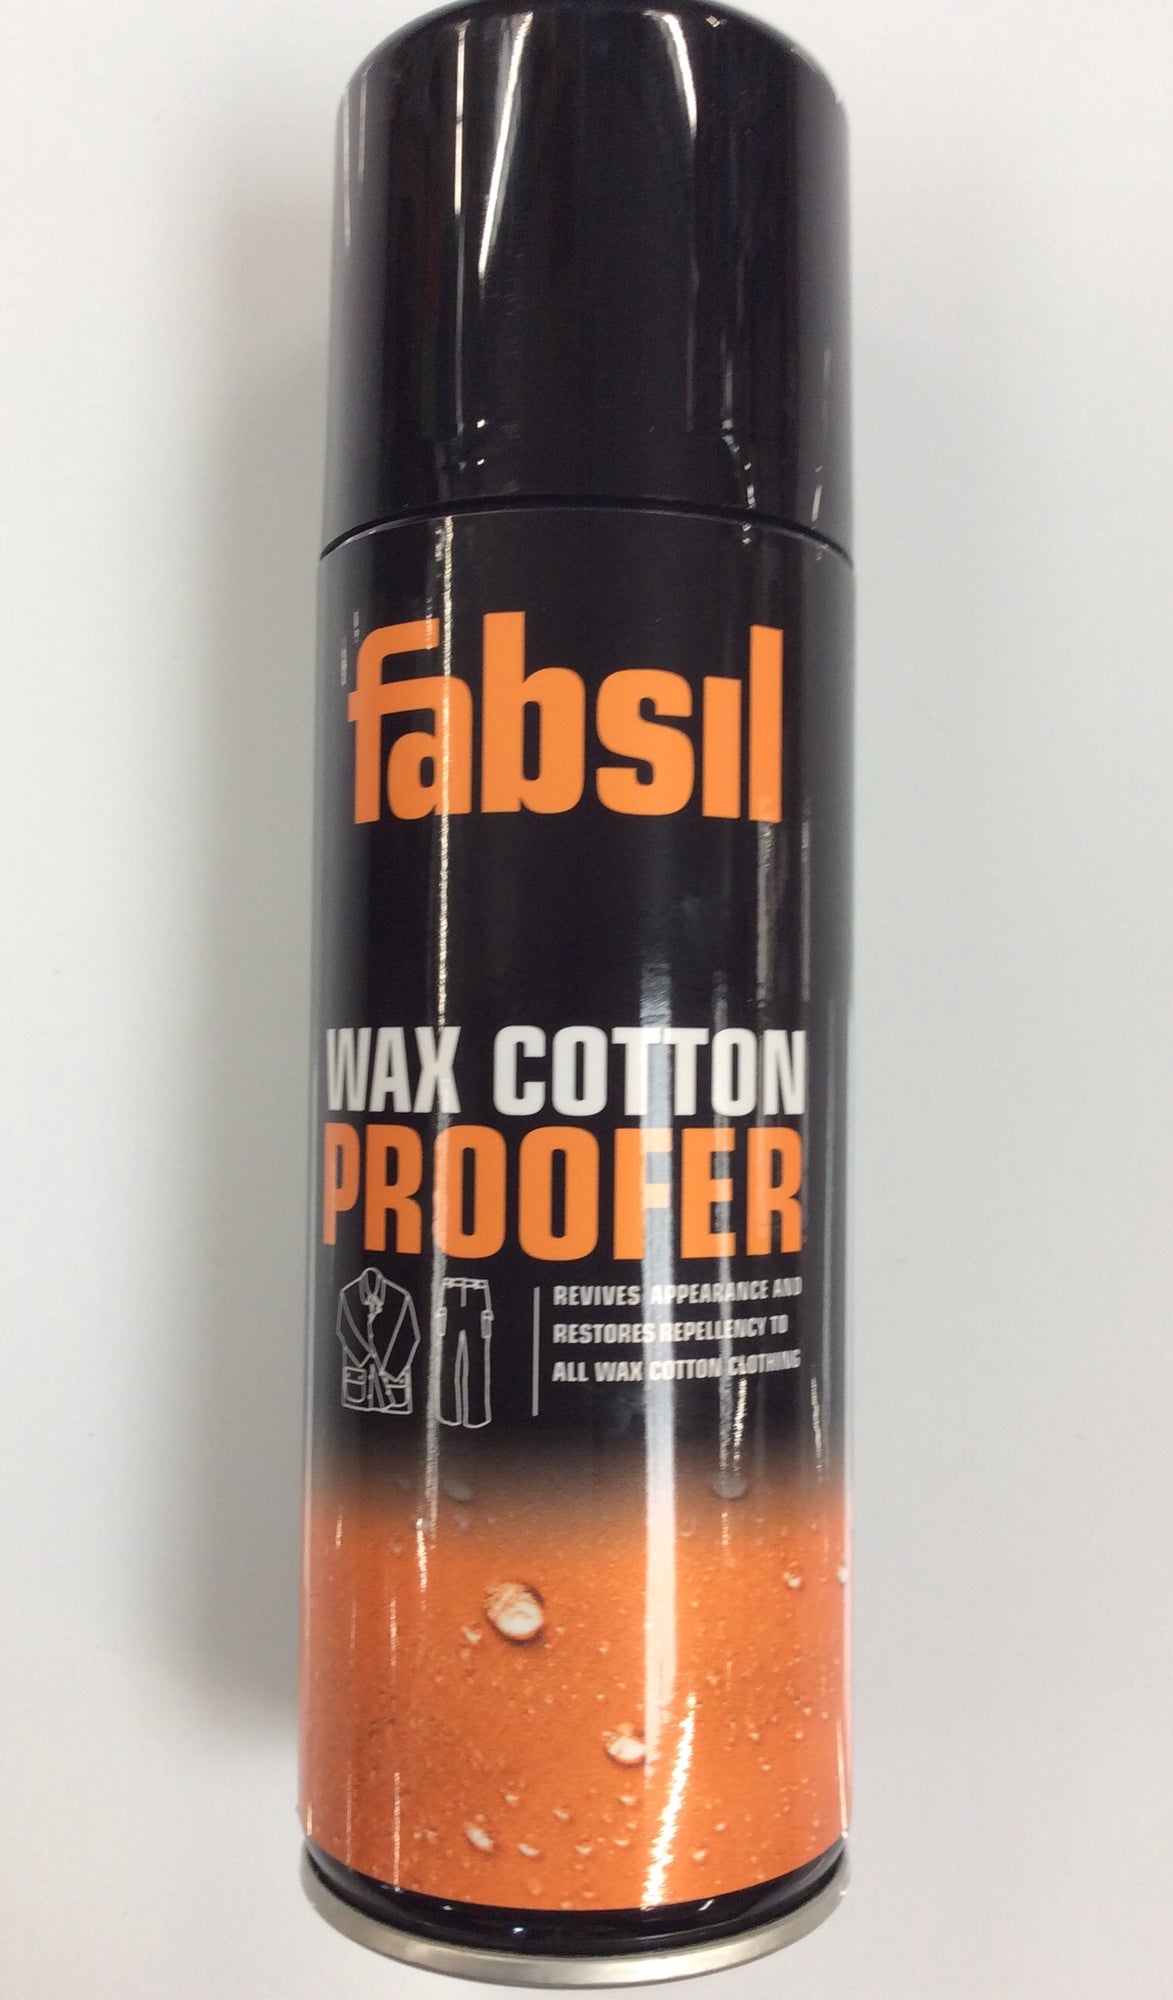 wax cotton proofer